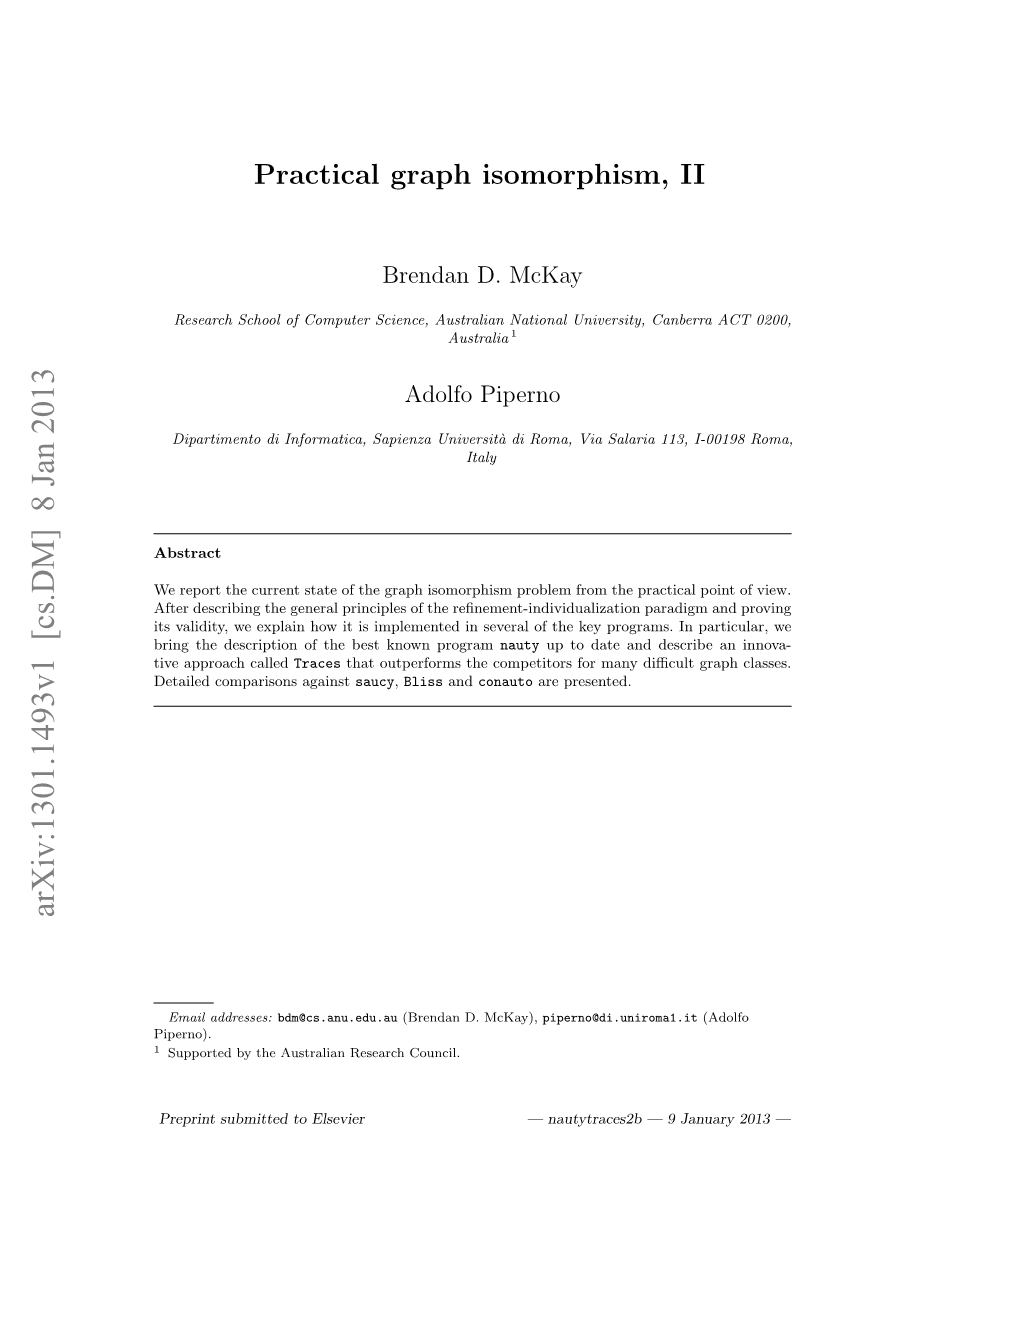 Practical Graph Isomorphism, II